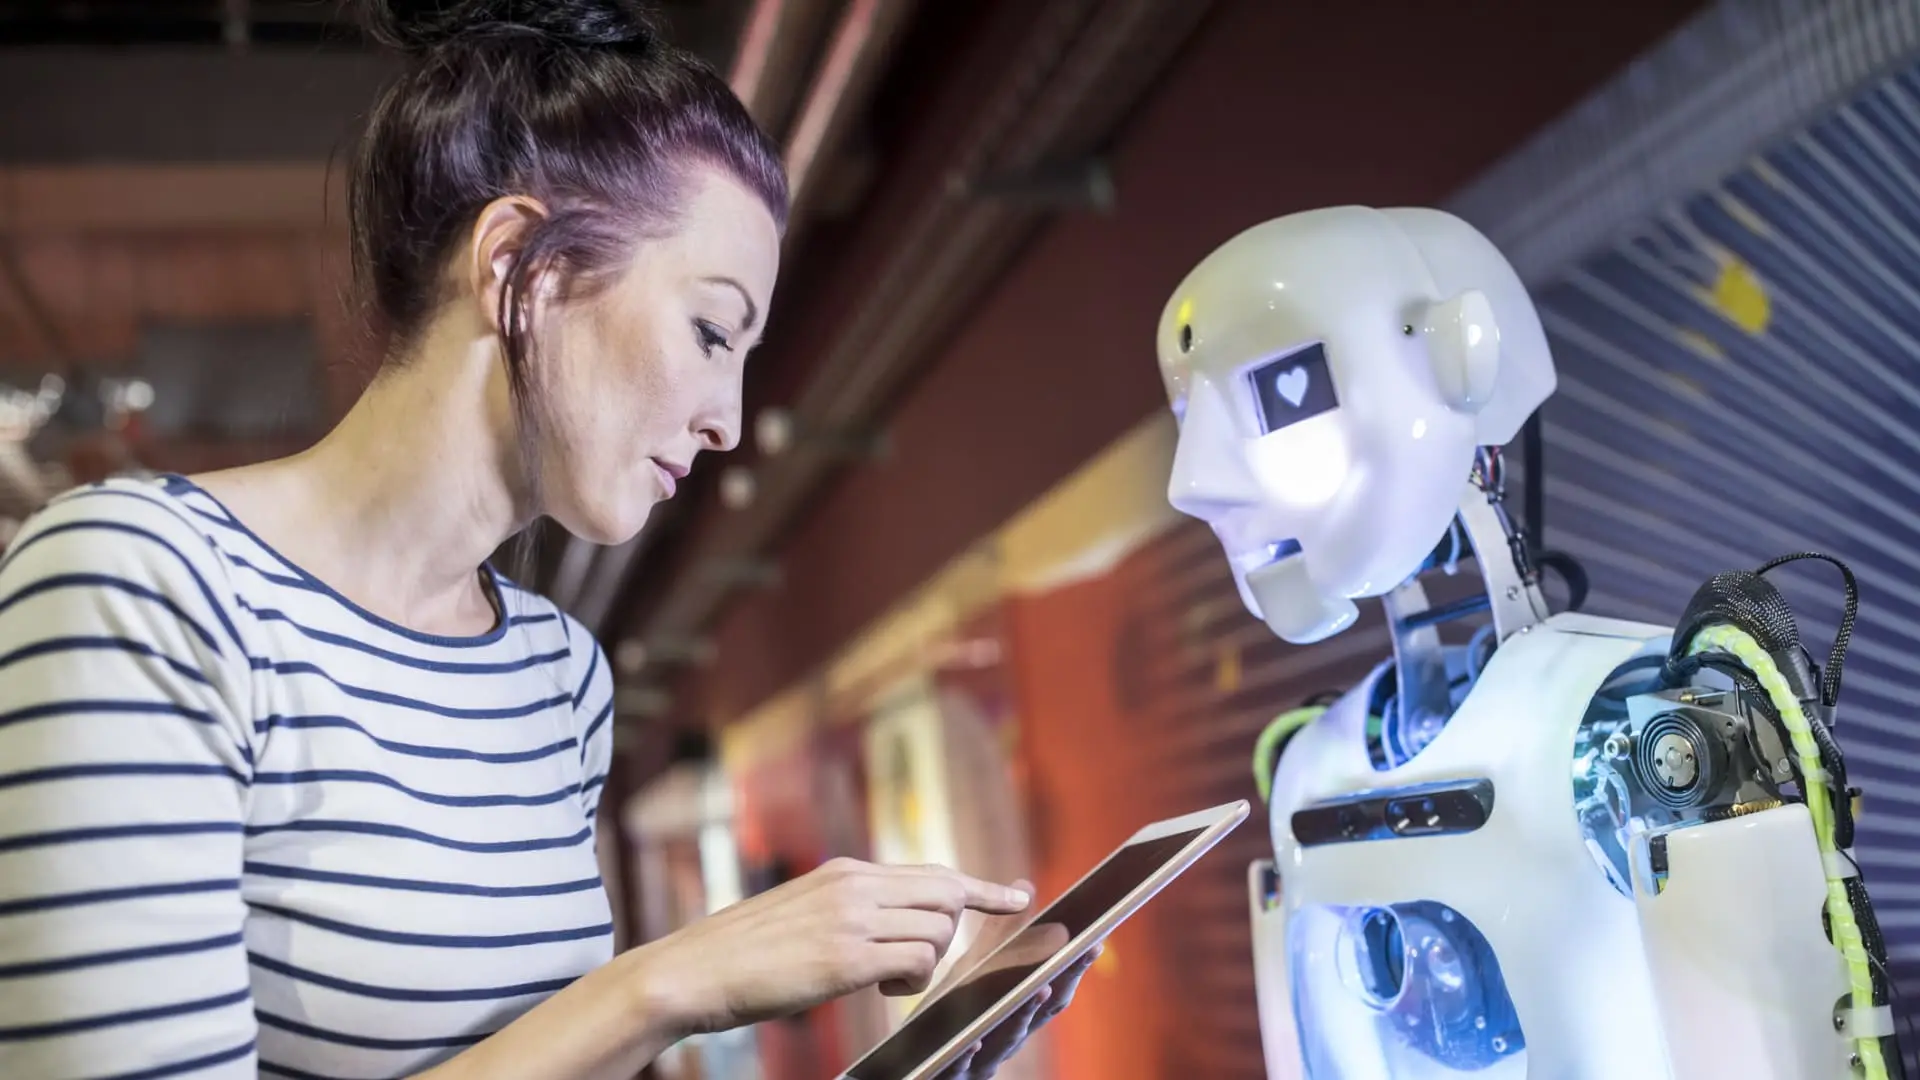 la inteligencia artificial nunca será como la humana - La IA realmente reemplazará a los humanos